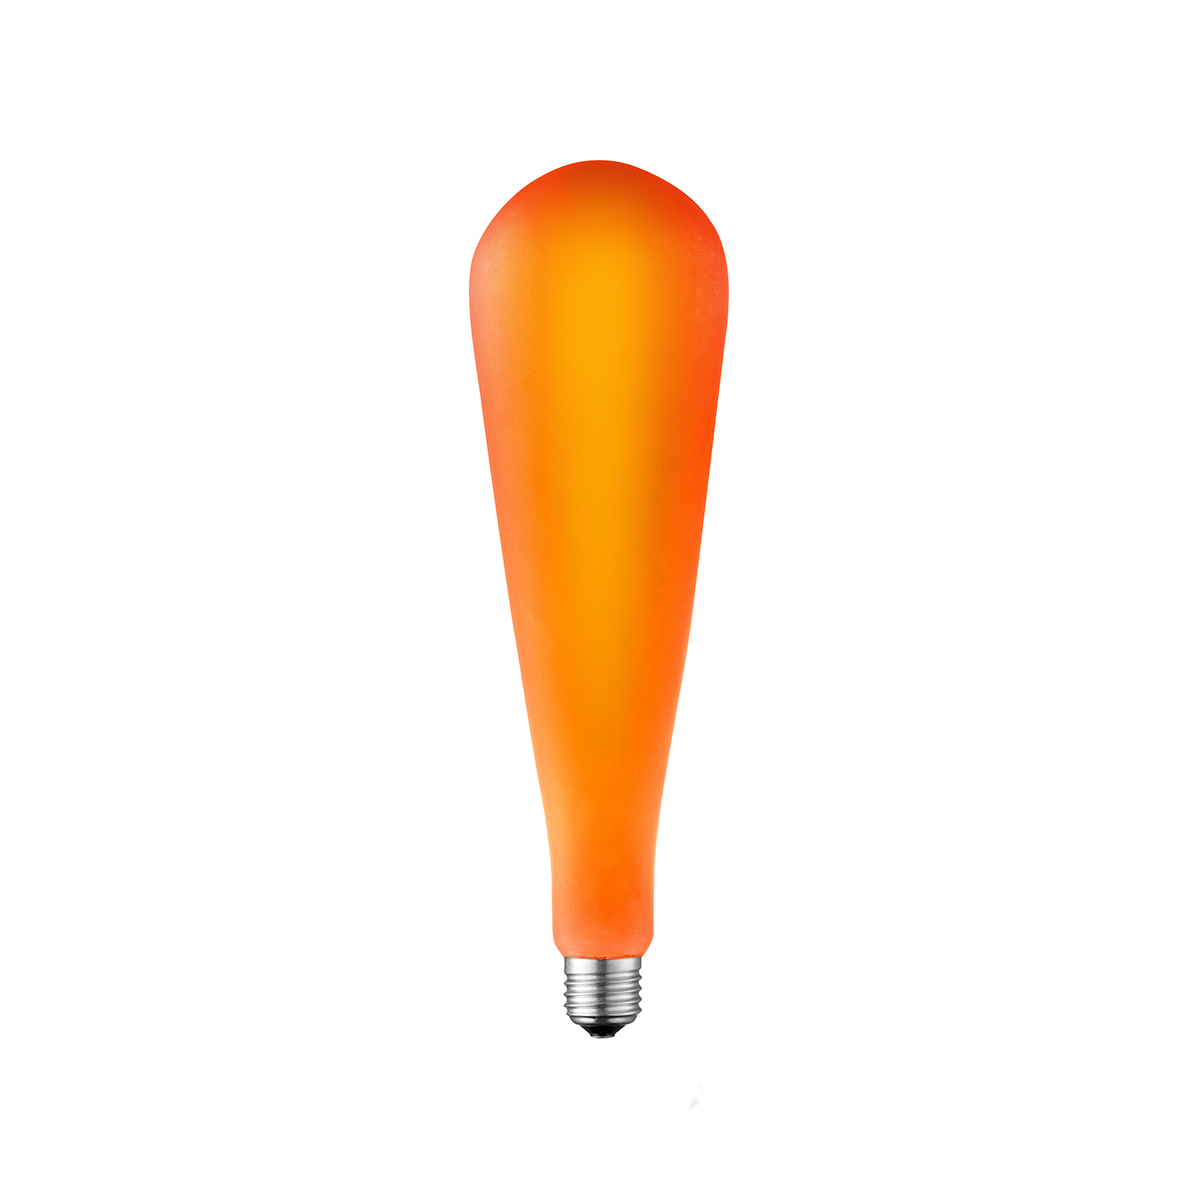 Tangla lighting - TLB-9002-04OG - LED Light Bulb Single Spiral filament - 4W orange opal - standard - non dimmable - E27